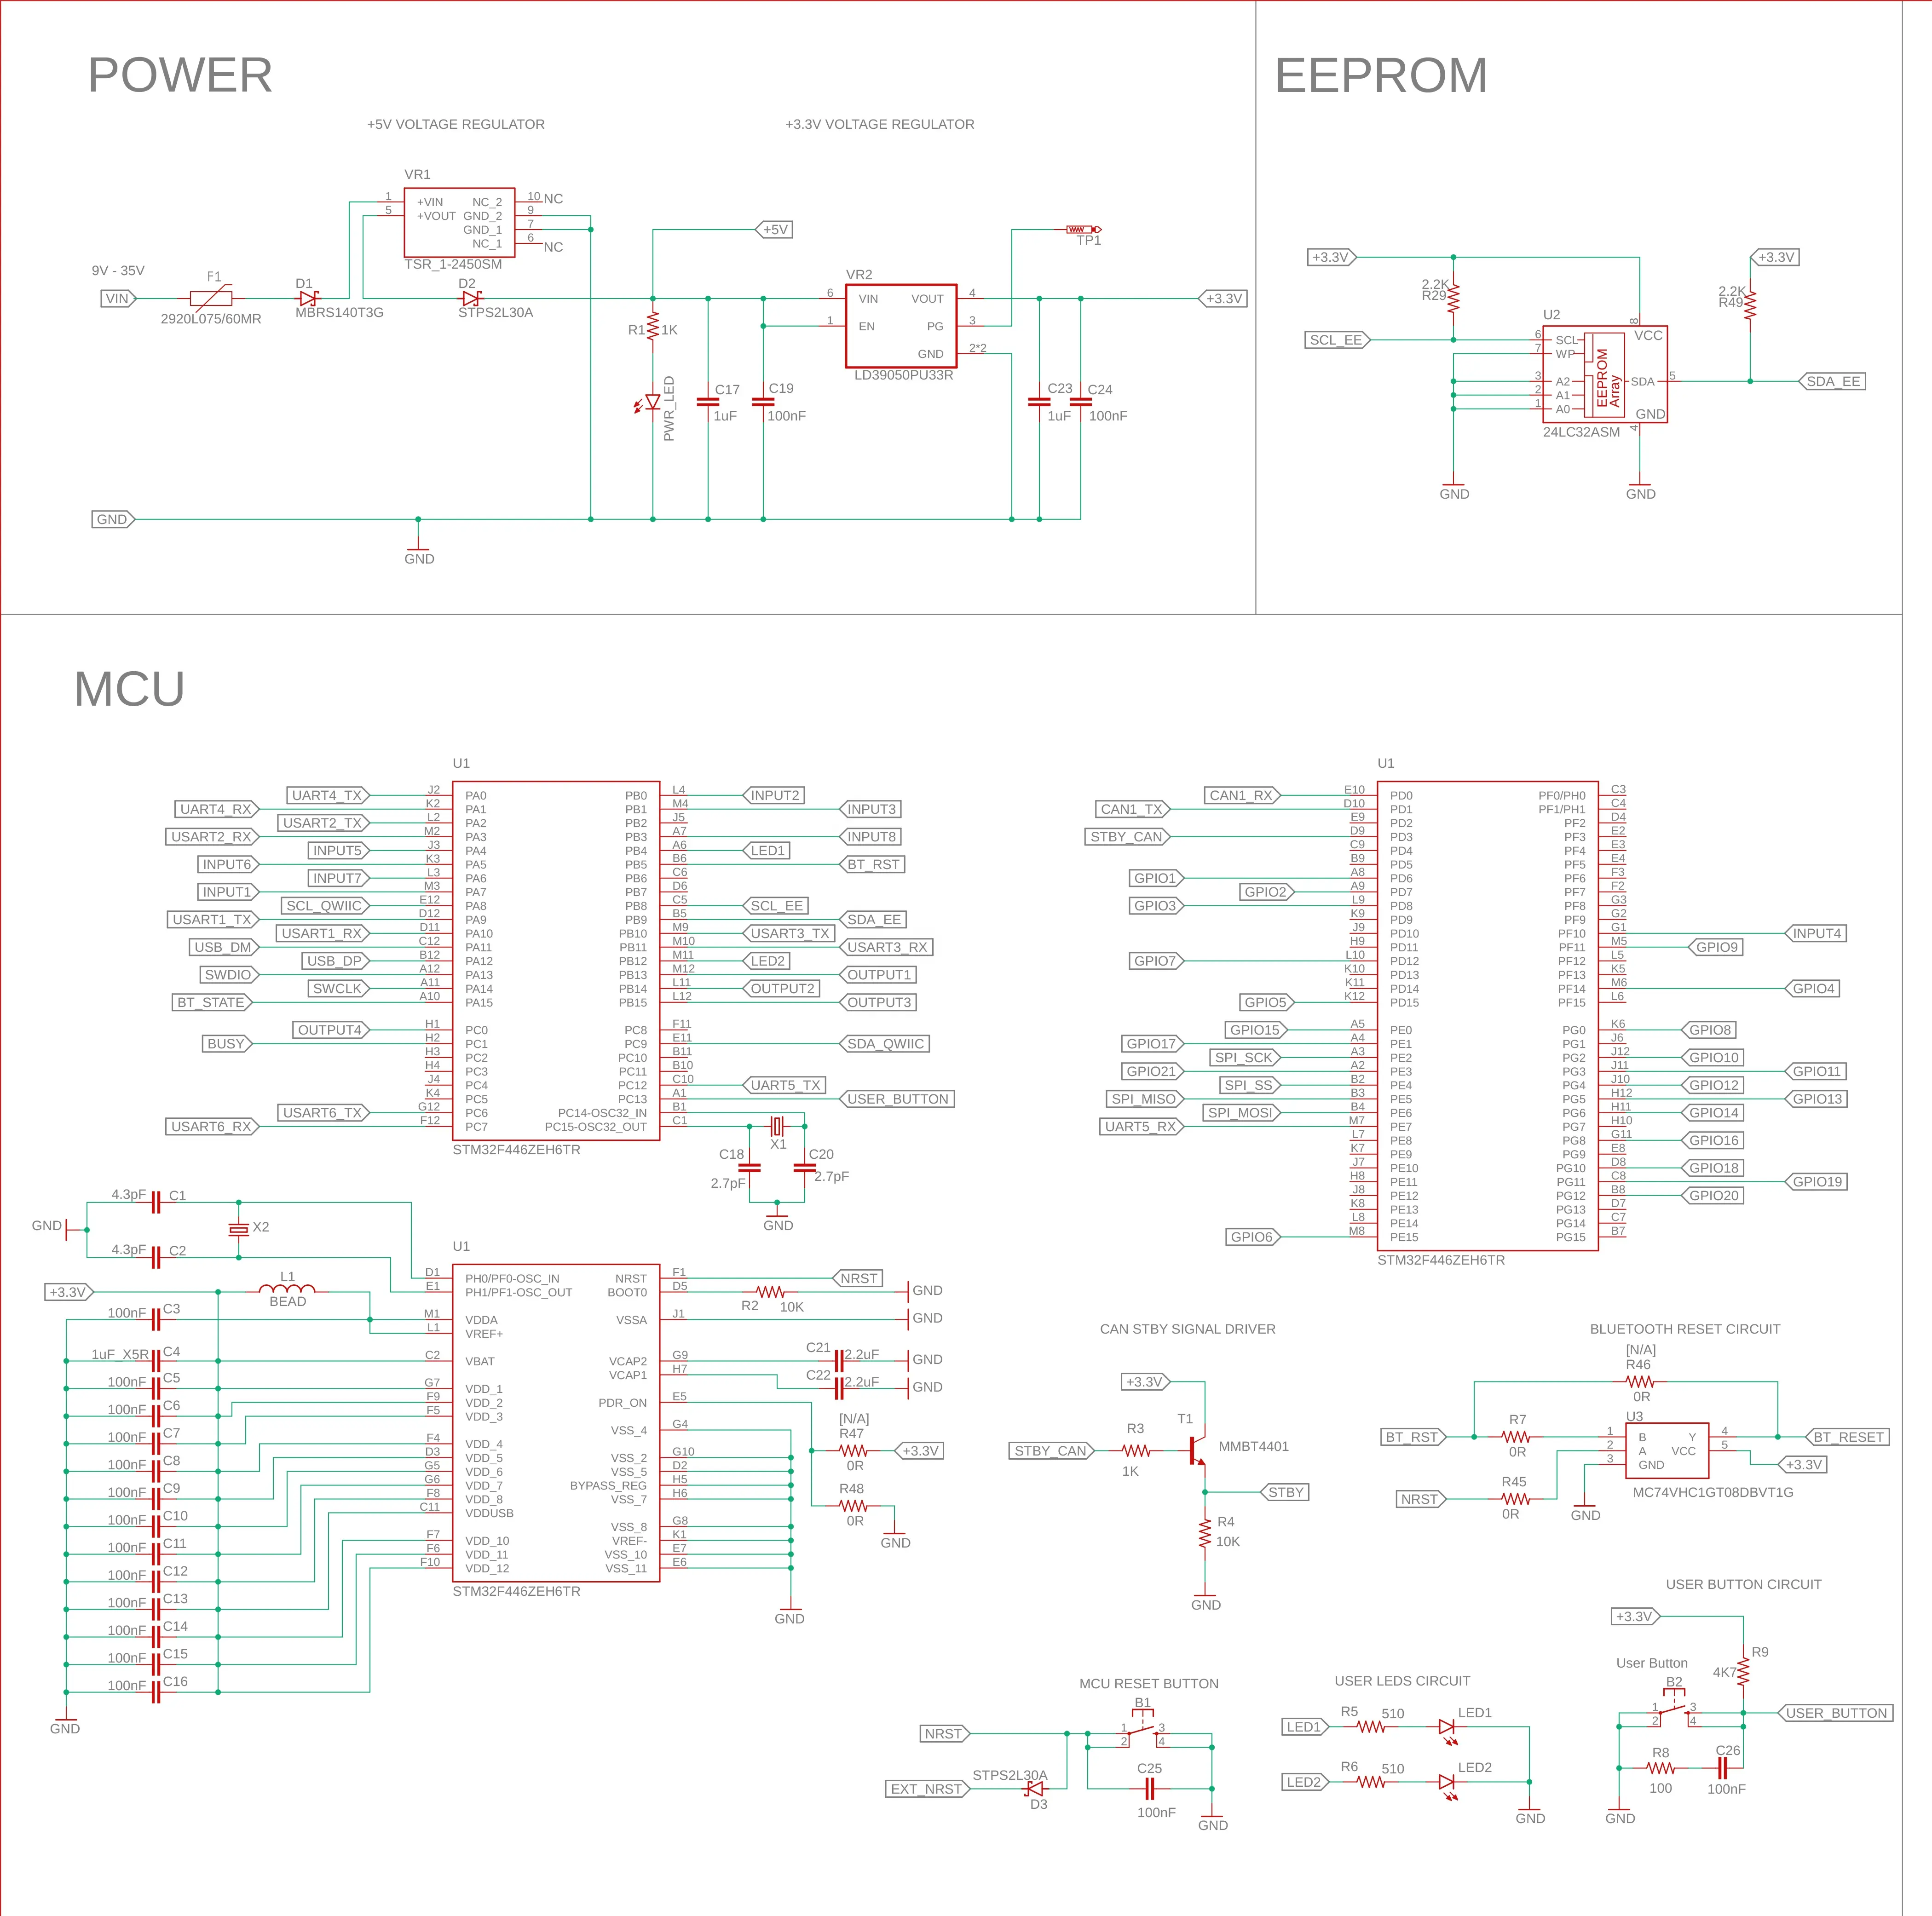 Conception de fichiers Bom Gerber personnalisés Disposition de circuits imprimés Service de conception et de fabrication de circuits imprimés électroniques